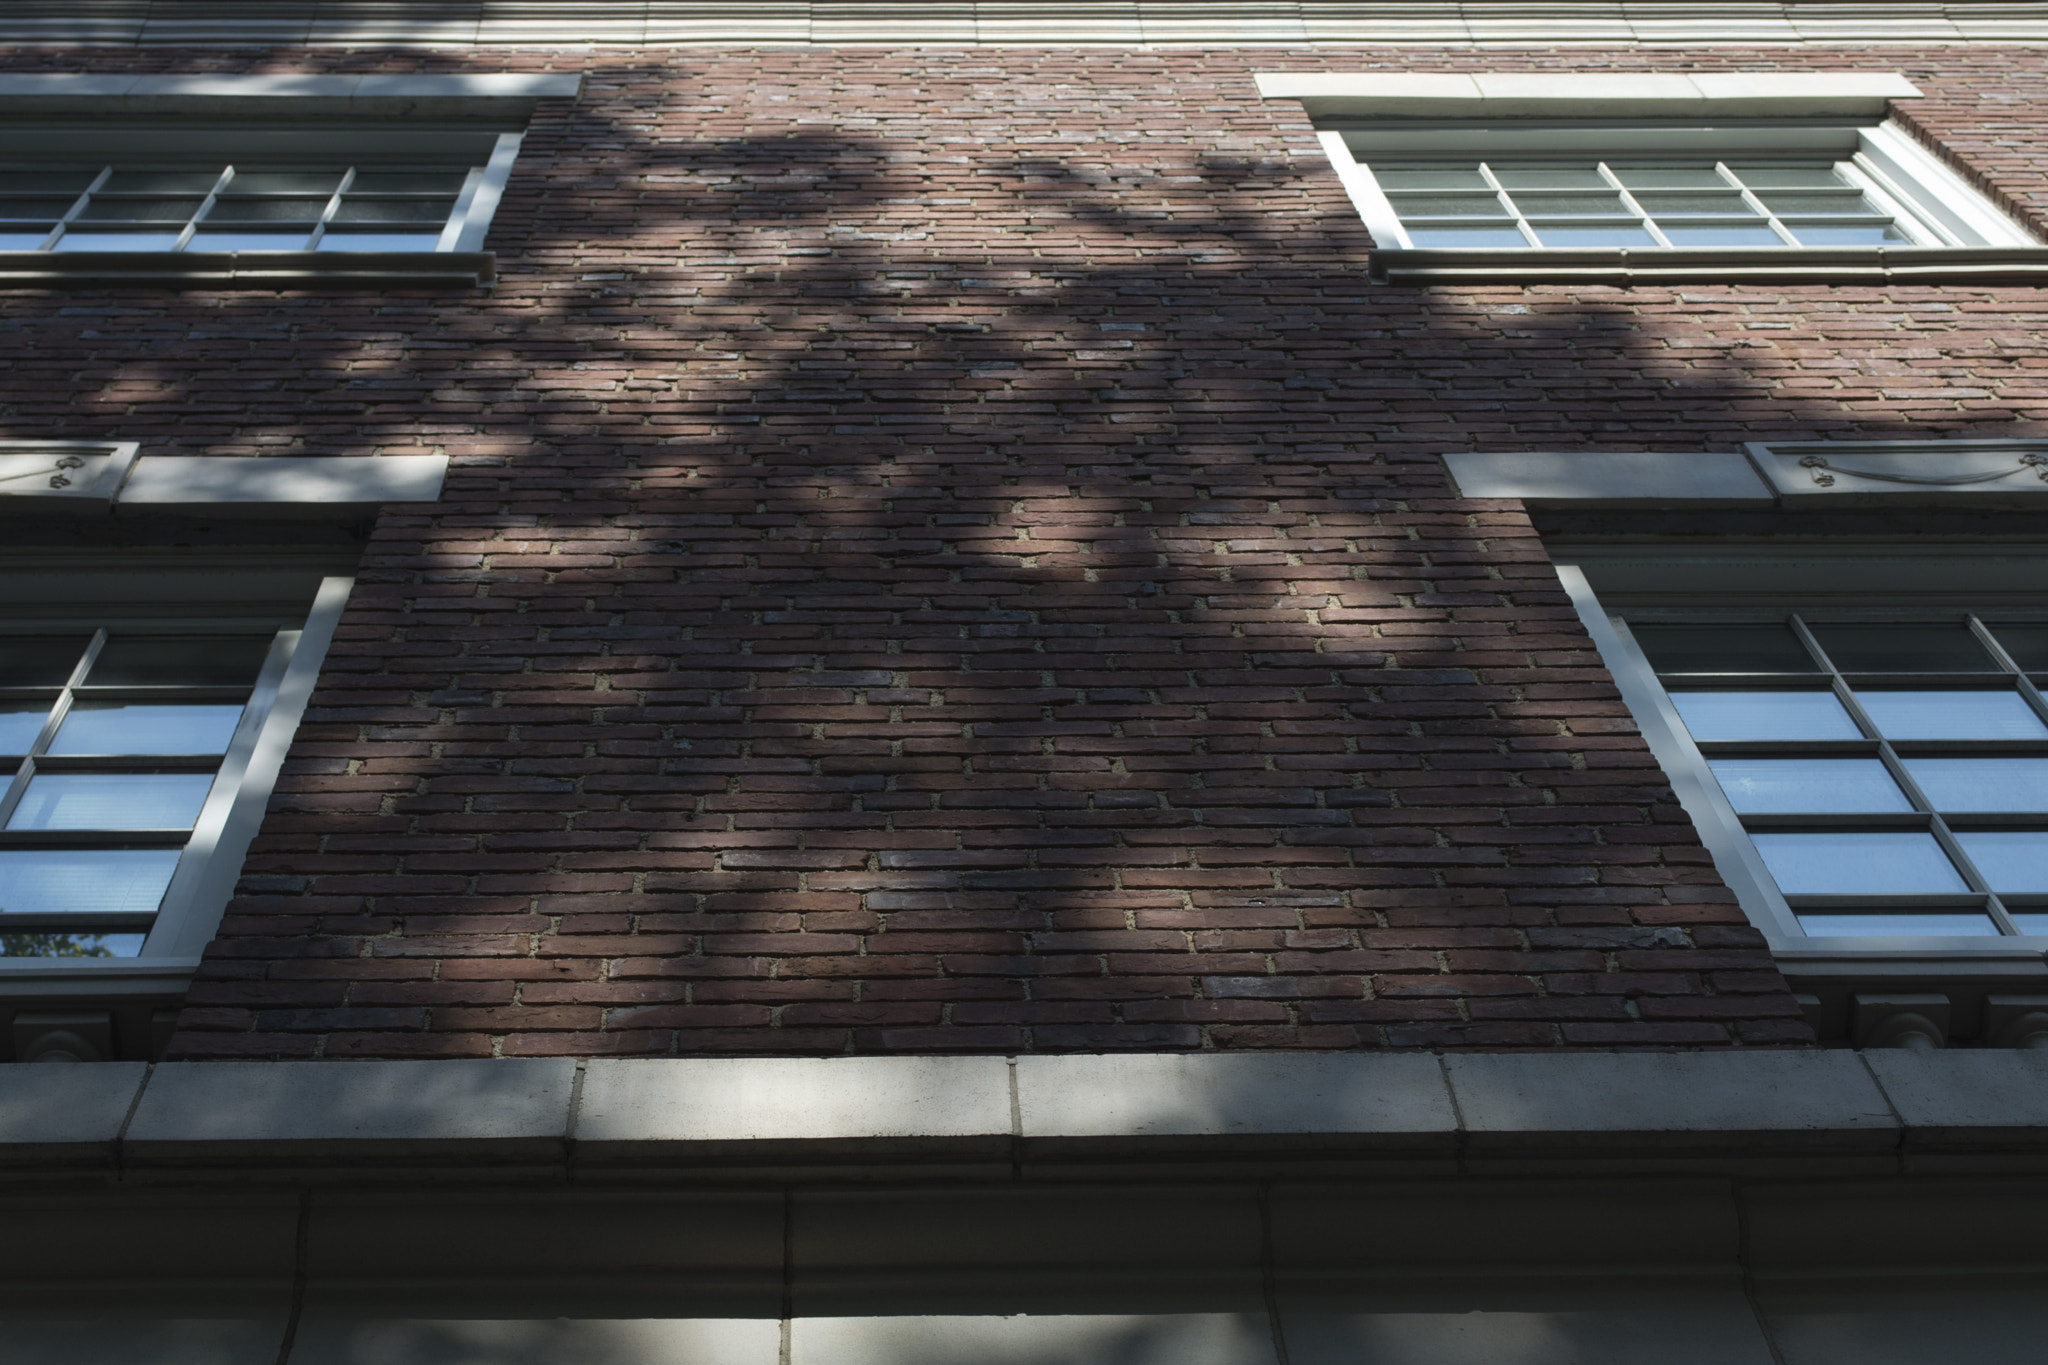 AF Zoom-Nikkor 35-70mm f/2.8D N sample photo. Shadows on brick photography